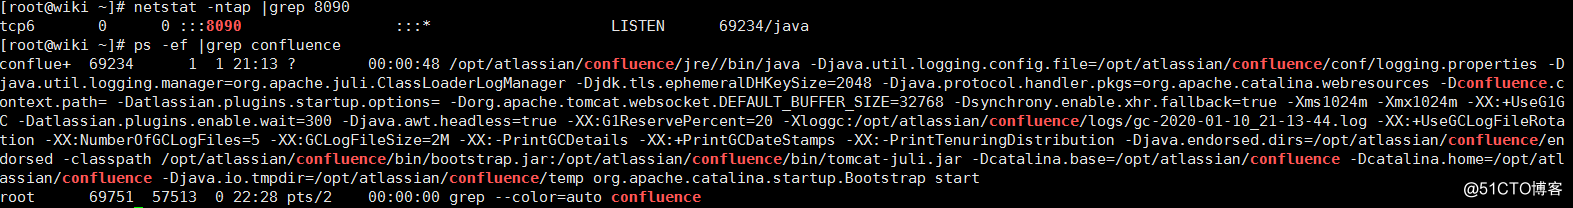 CentOS 7.6 破解安装 Confluence 和 Jira（送安装包和破解工具）